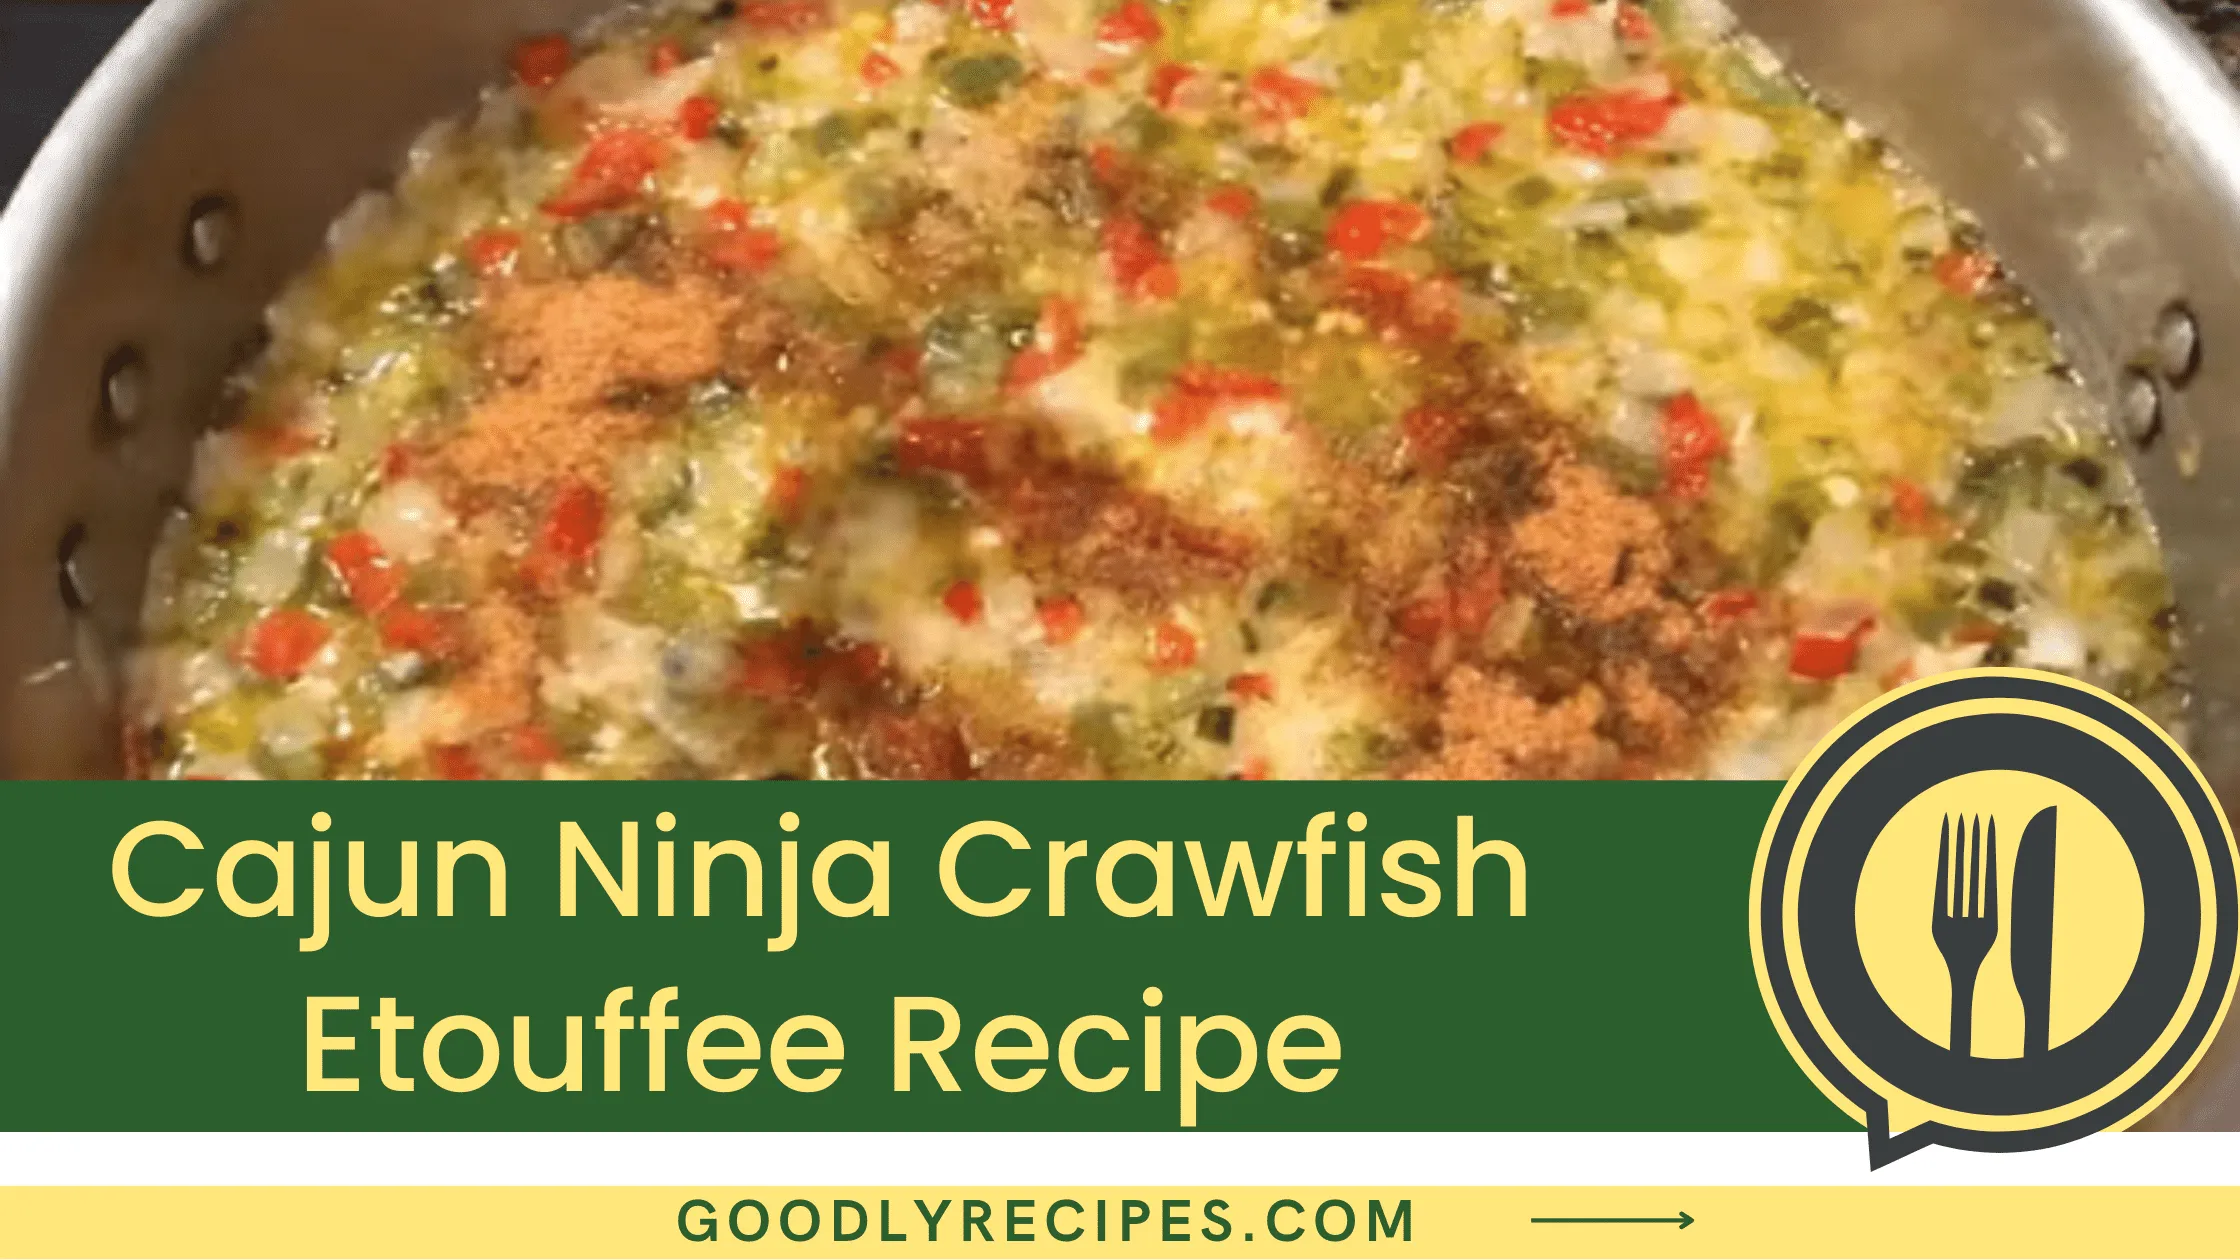 What is Cajun Ninja Crawfish Etouffee?